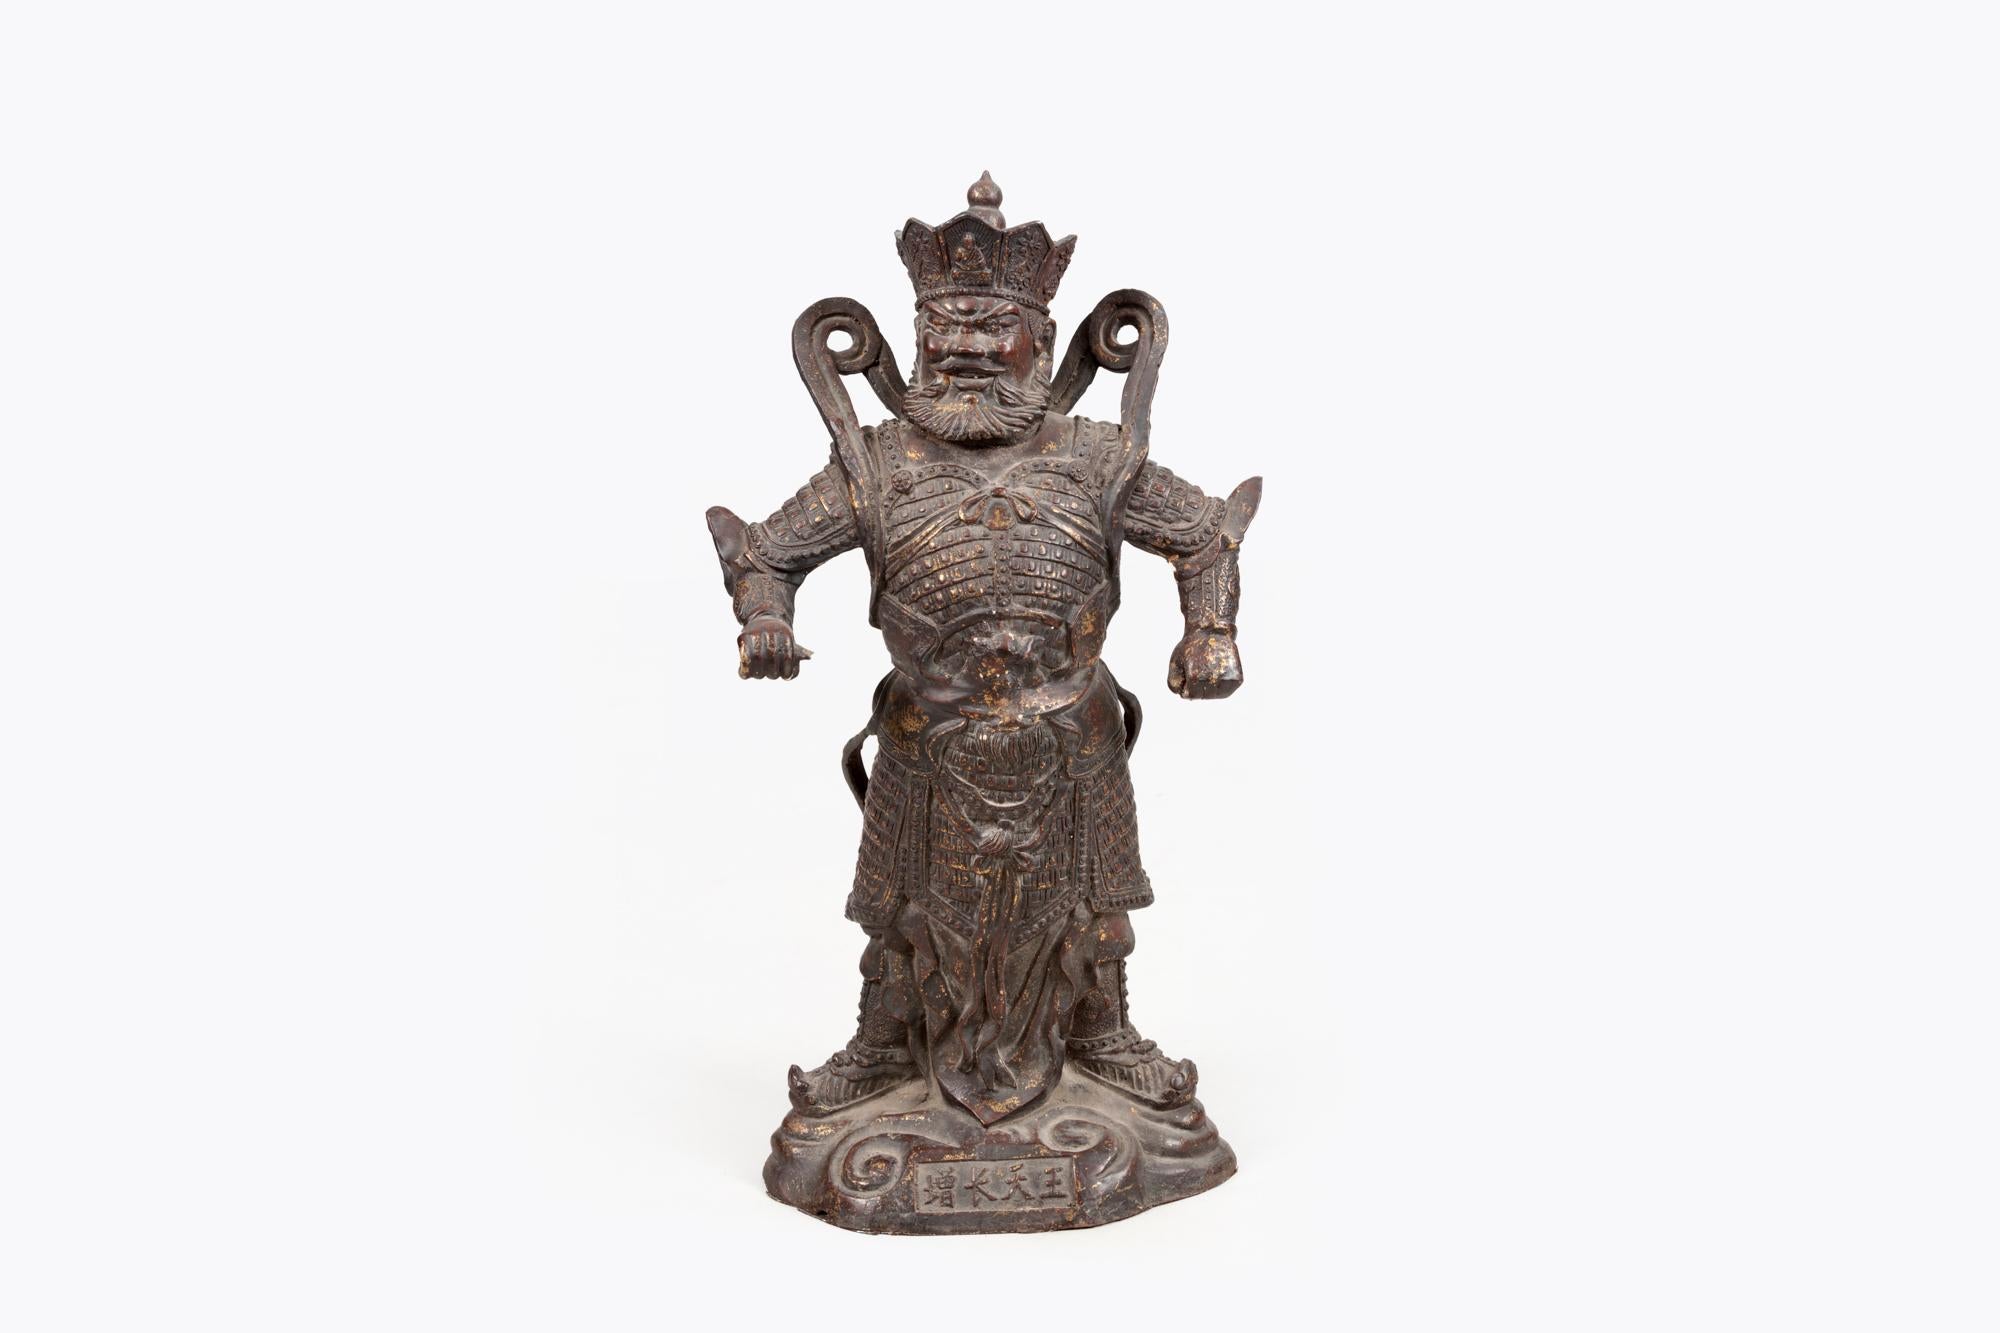 skulptur des Guan Yu (??), einer Schutzgottheit, aus dem 19.

Guan Yu (gest. 219 n. Chr.), ein Krieger der späten Han-Dynastie (206 v. Chr. - 220 n. Chr.), der für seine Tapferkeit und Treue bekannt war, wurde später als Heiliger im daoistischen